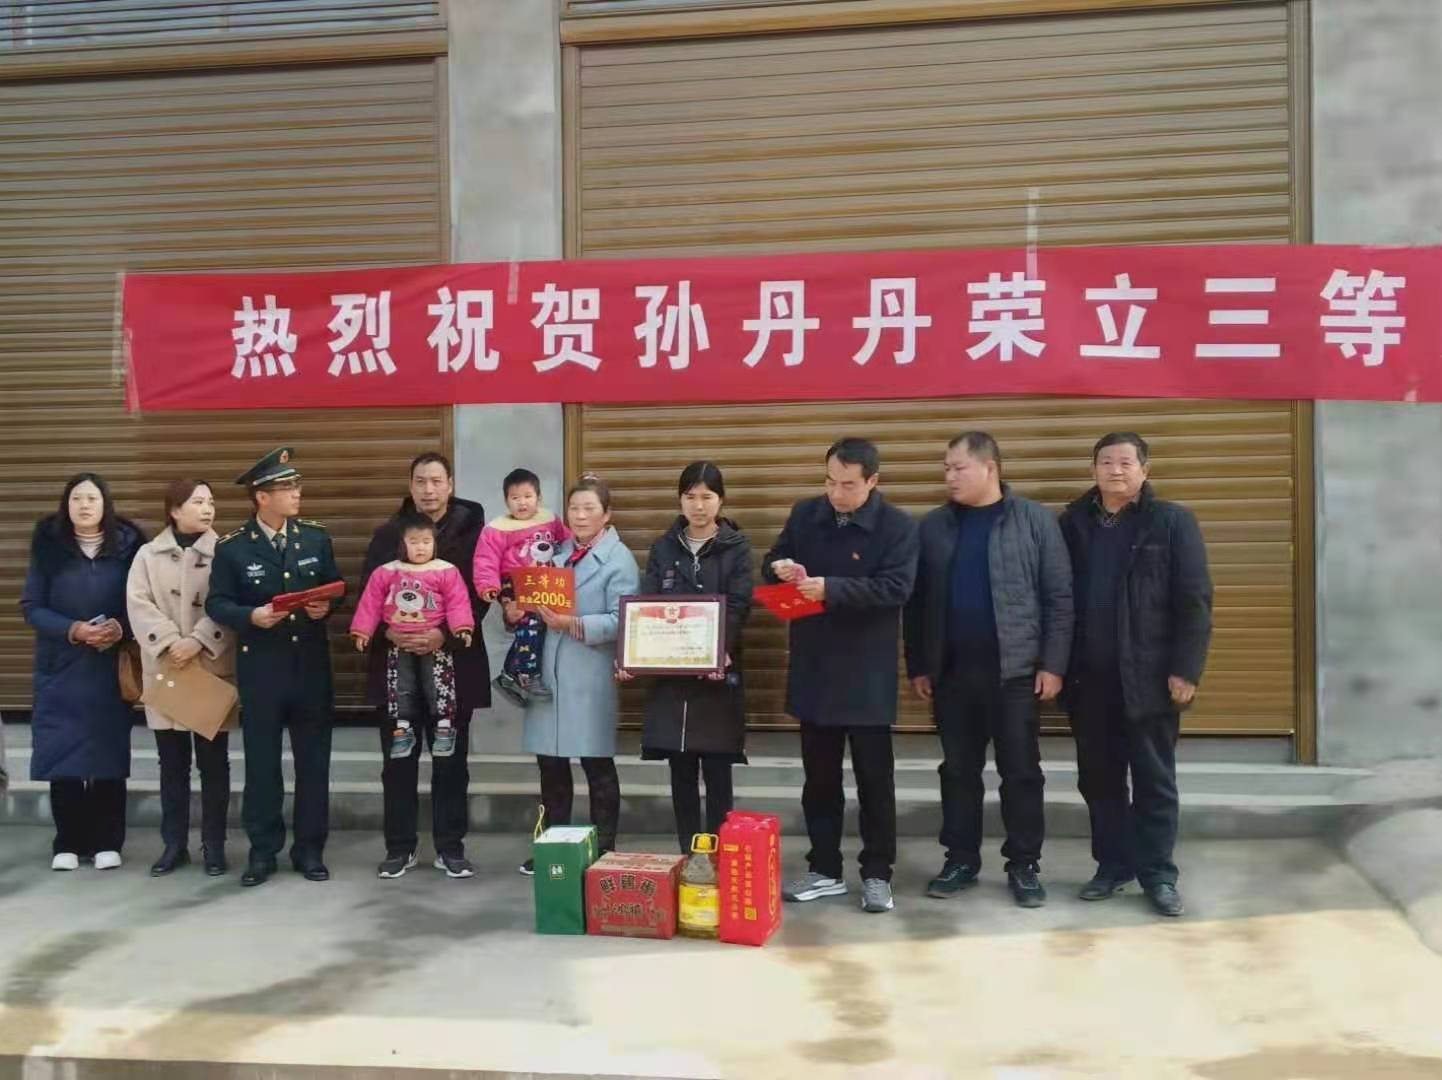 12月21日上午,邓州市退役军人事务局领导杜自力,刘集镇武装部副部长盛